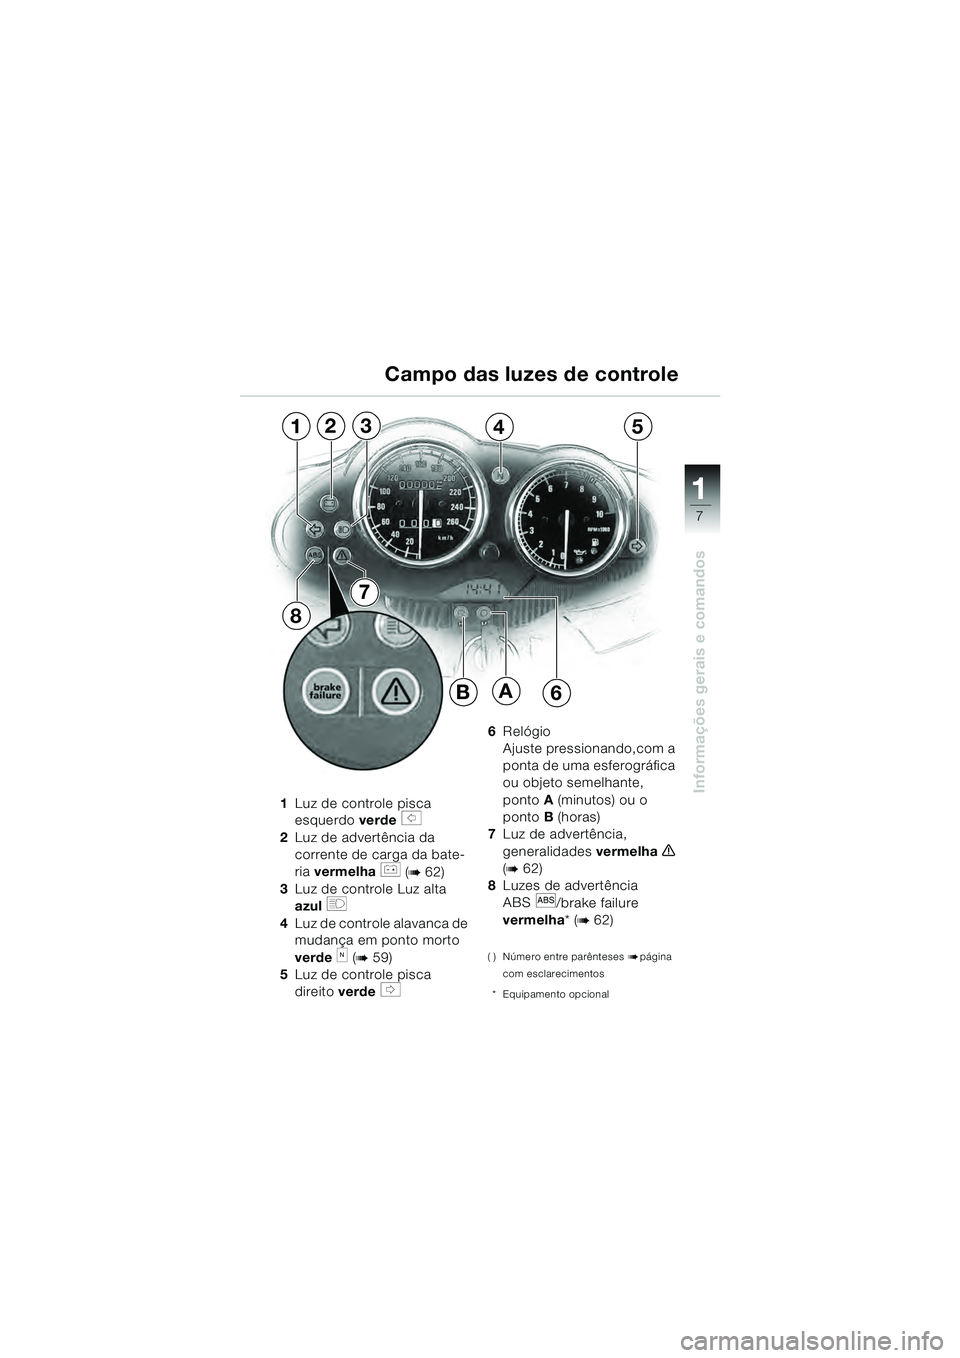 BMW MOTORRAD R 1100 S 2000  Manual do condutor (in Portuguese) 11
7
Informações gerais e comandos1Luz de controle pisca 
esquerdo  verde 
s 
2 Luz de advertência da 
corrente de carga da bate-
ria  vermelha 
r (b 62)
3 Luz de controle Luz alta
azul 
q
4Luz de 